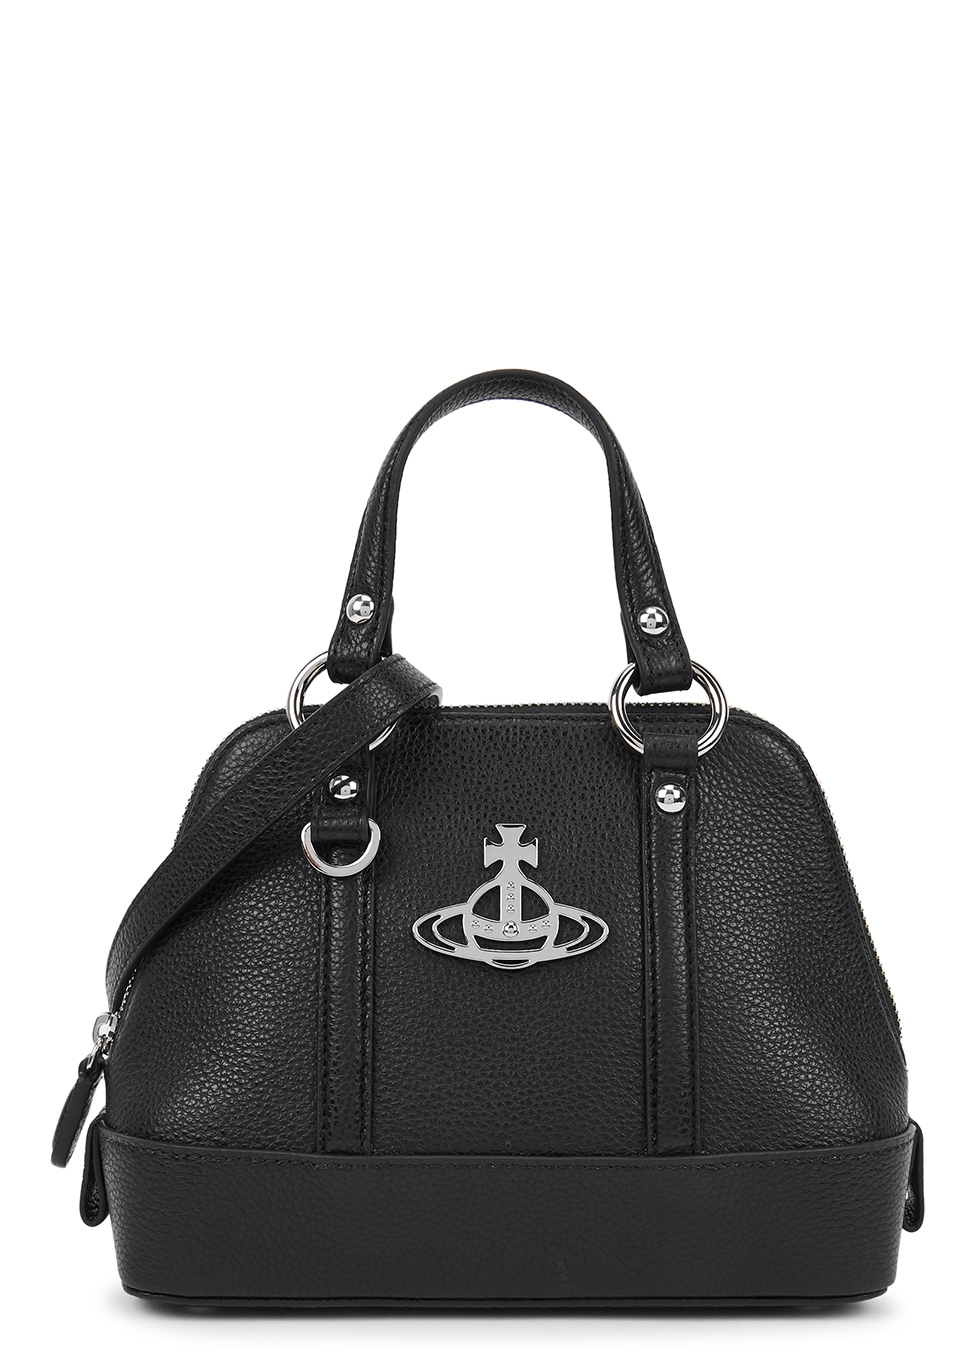 Vivienne Westwood Jordan black leather top handle bag - Harvey Nichols